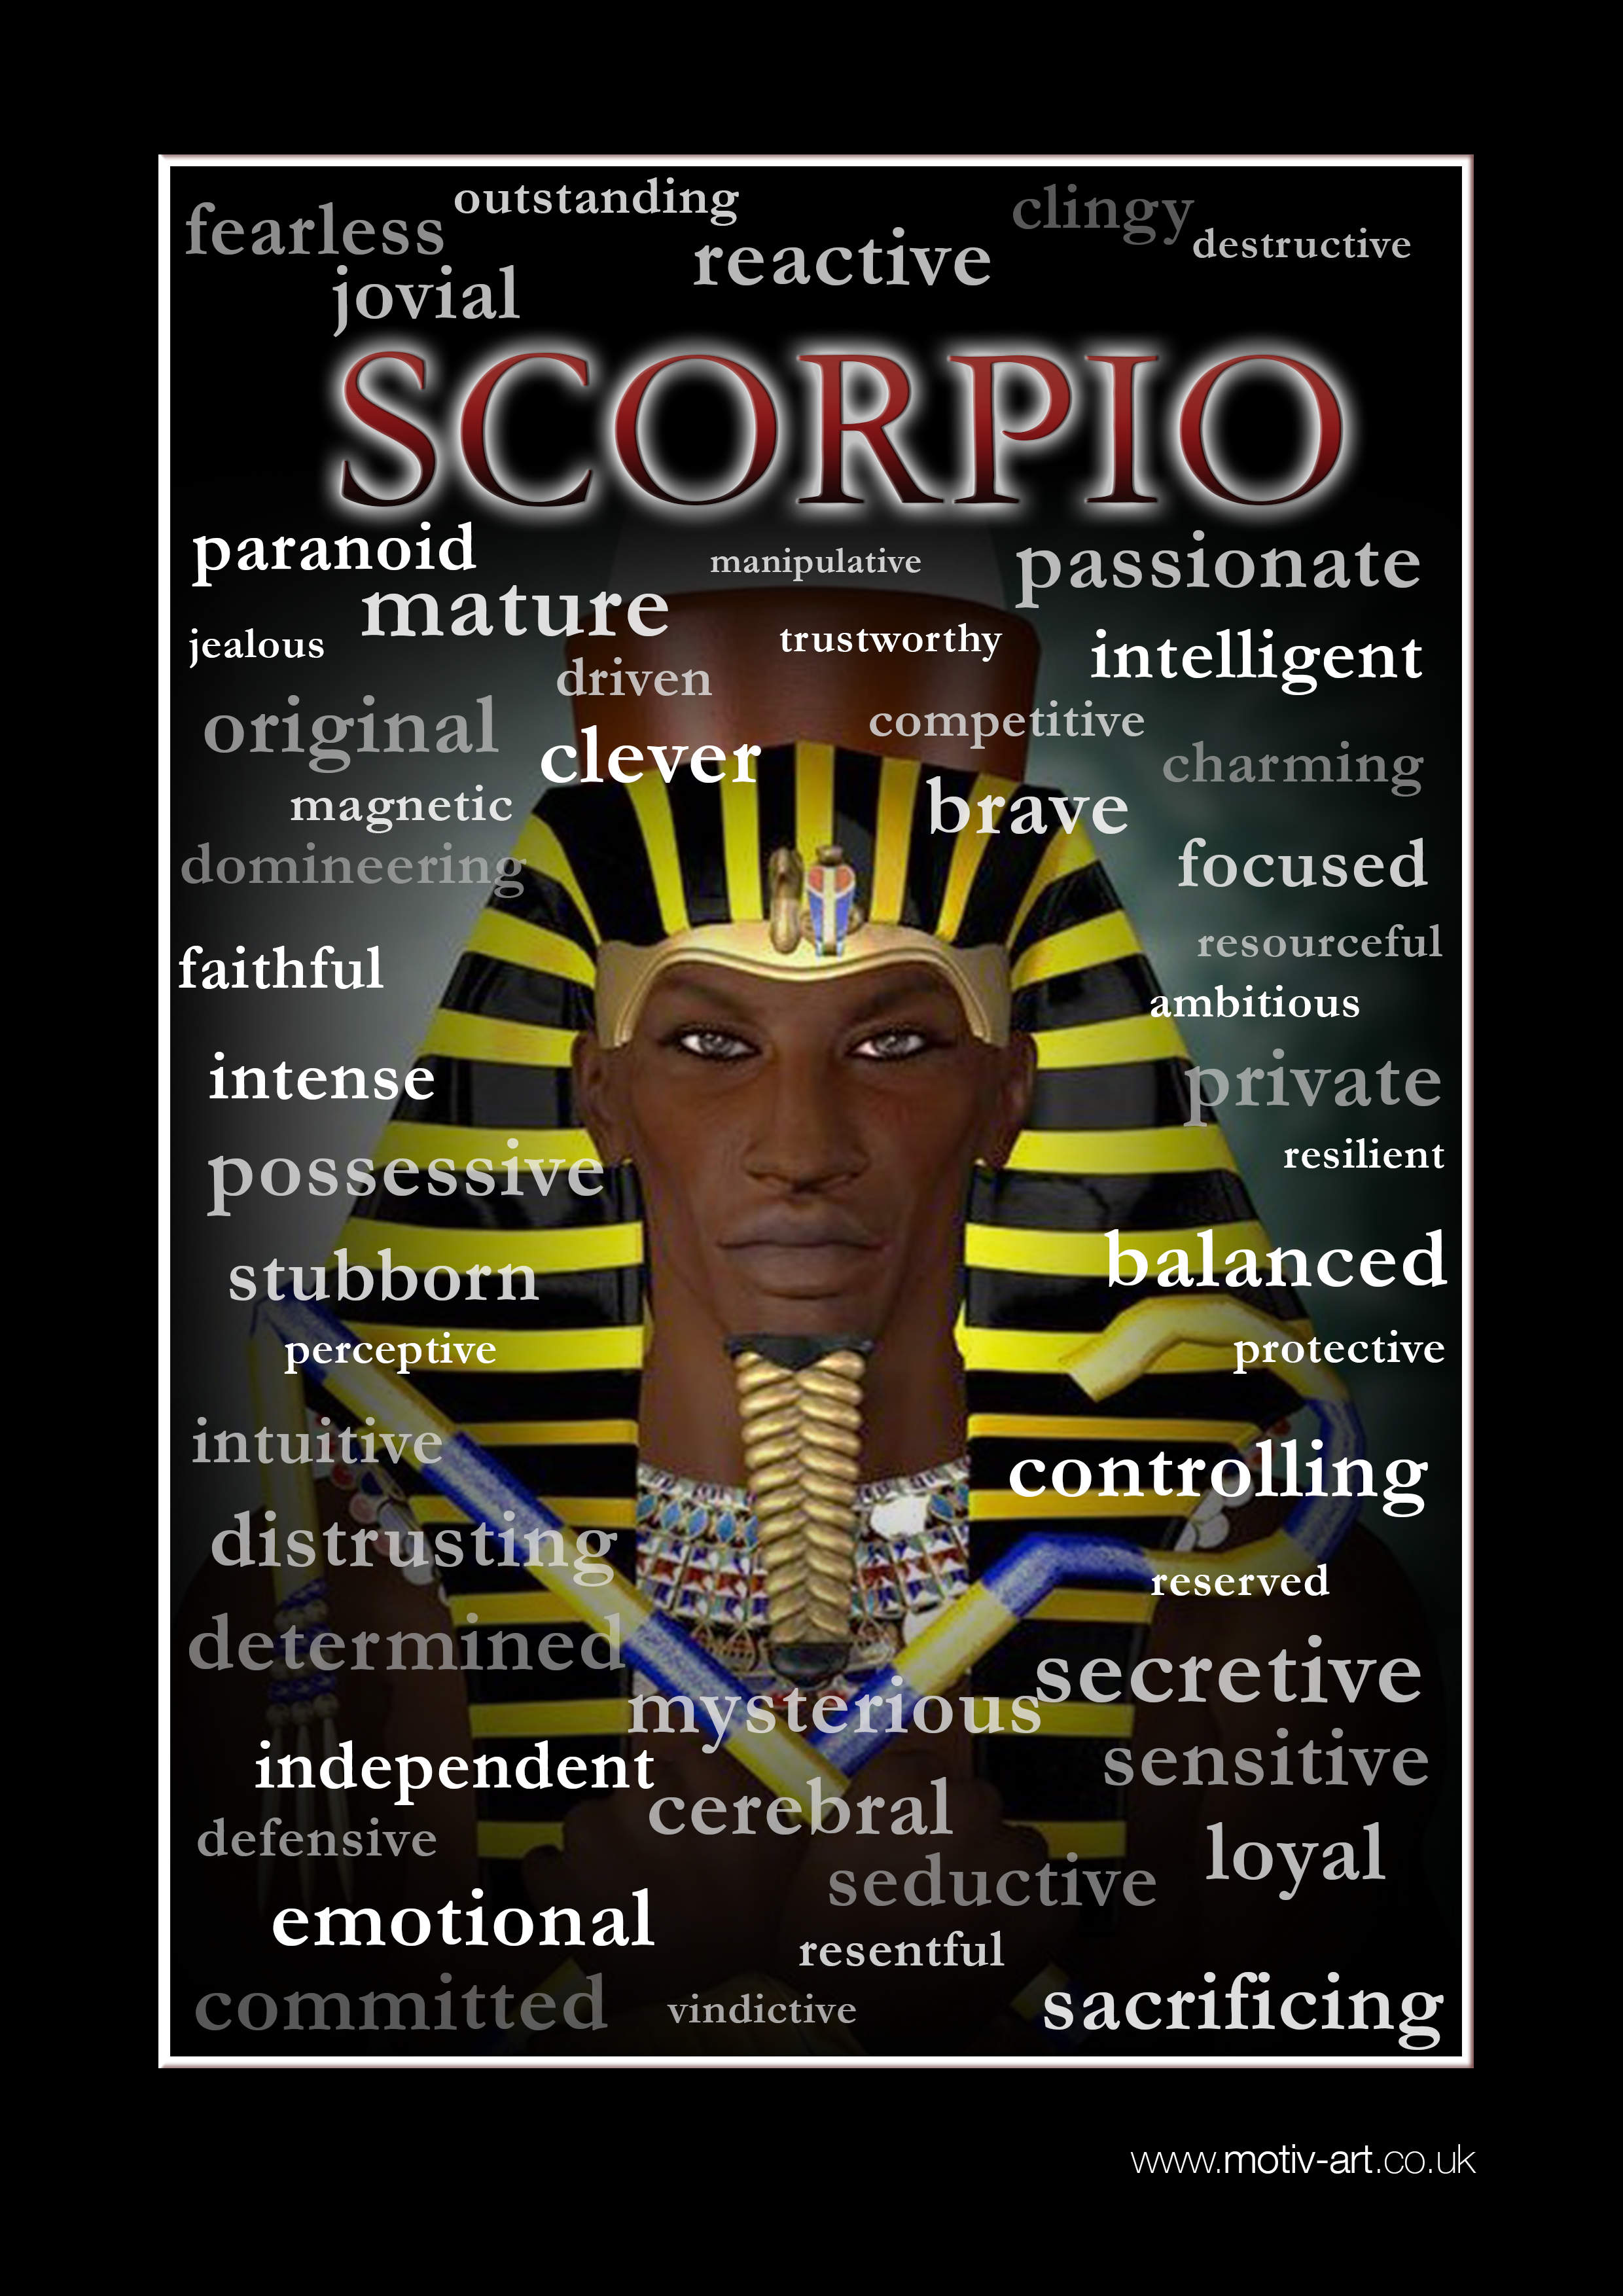 Scorpio 24 Oct - 22 Nov